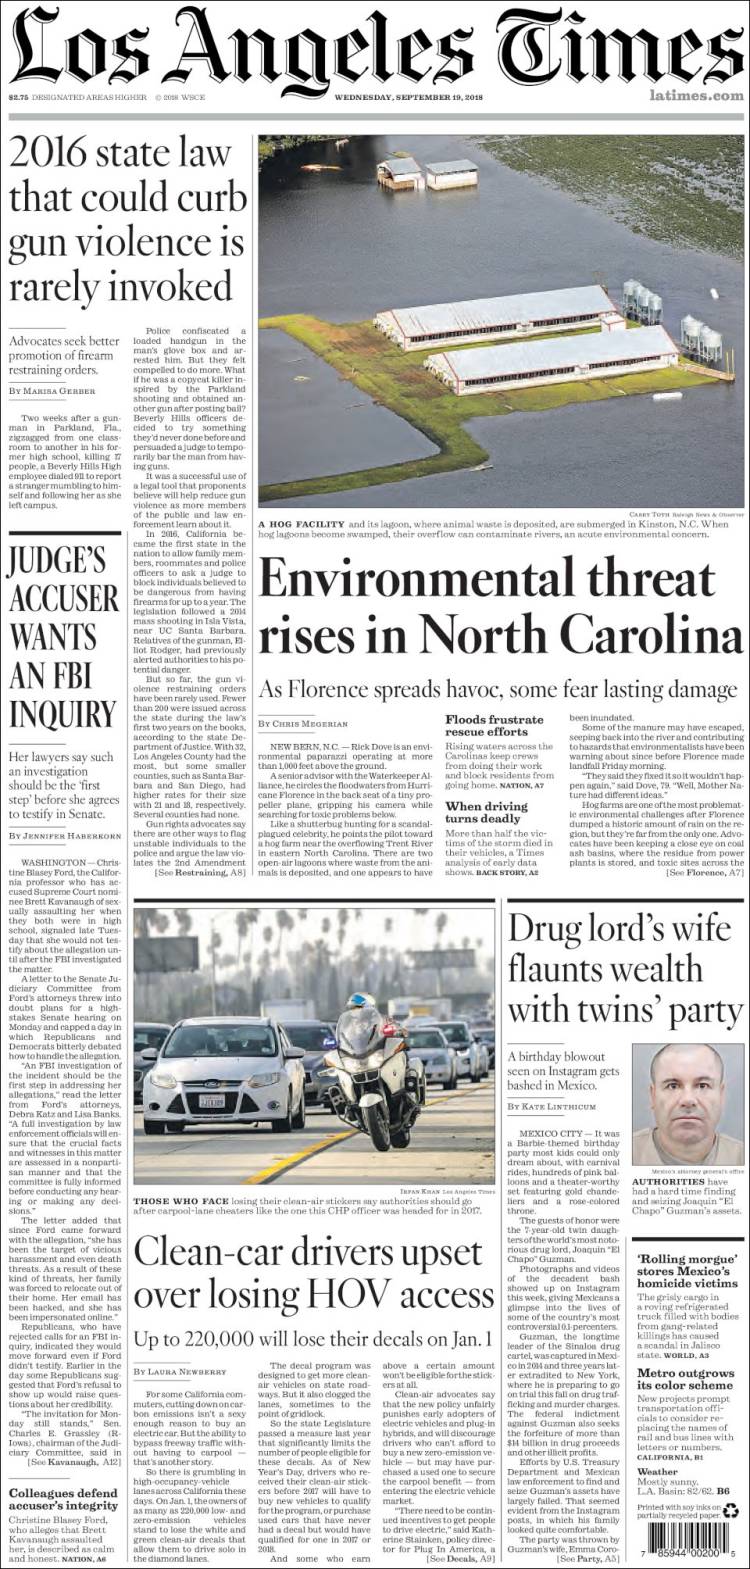 صفحه اول روزنامه لس آنجلس تایمز/ تهدید محیط زیستی در کارولینای شمالی بالا گرفت 